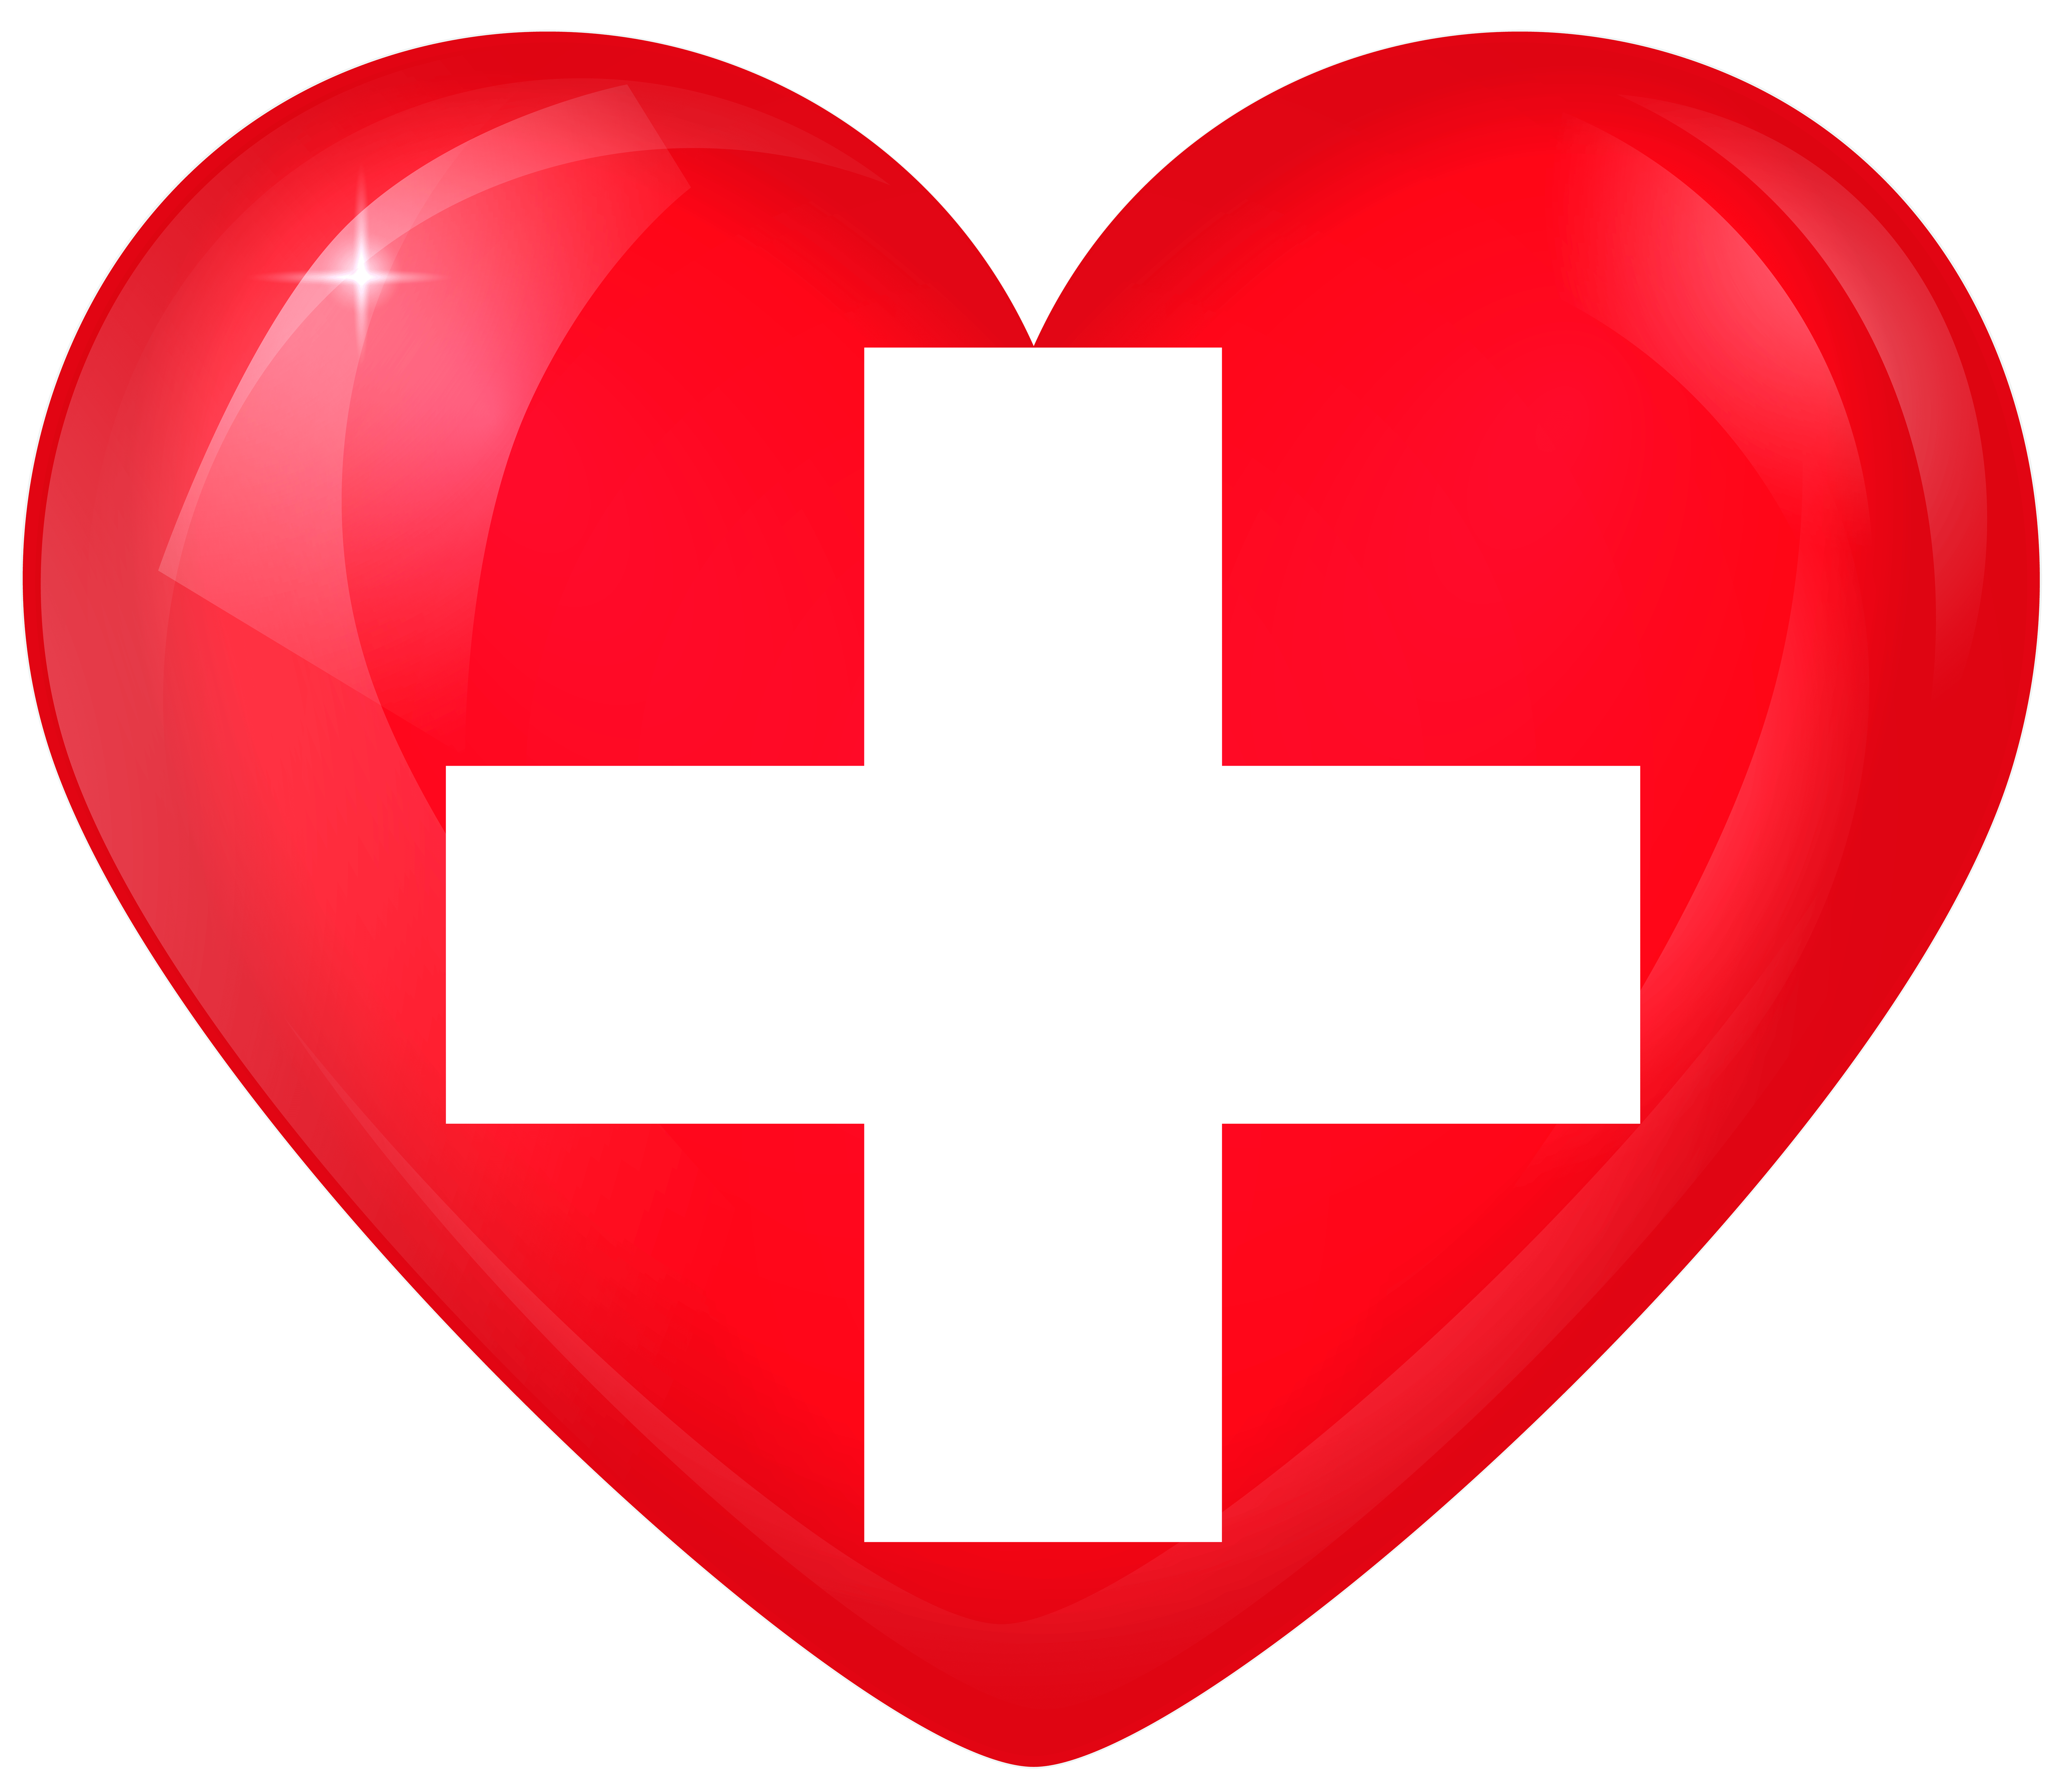 Switzerland Large Heart Flag Quality